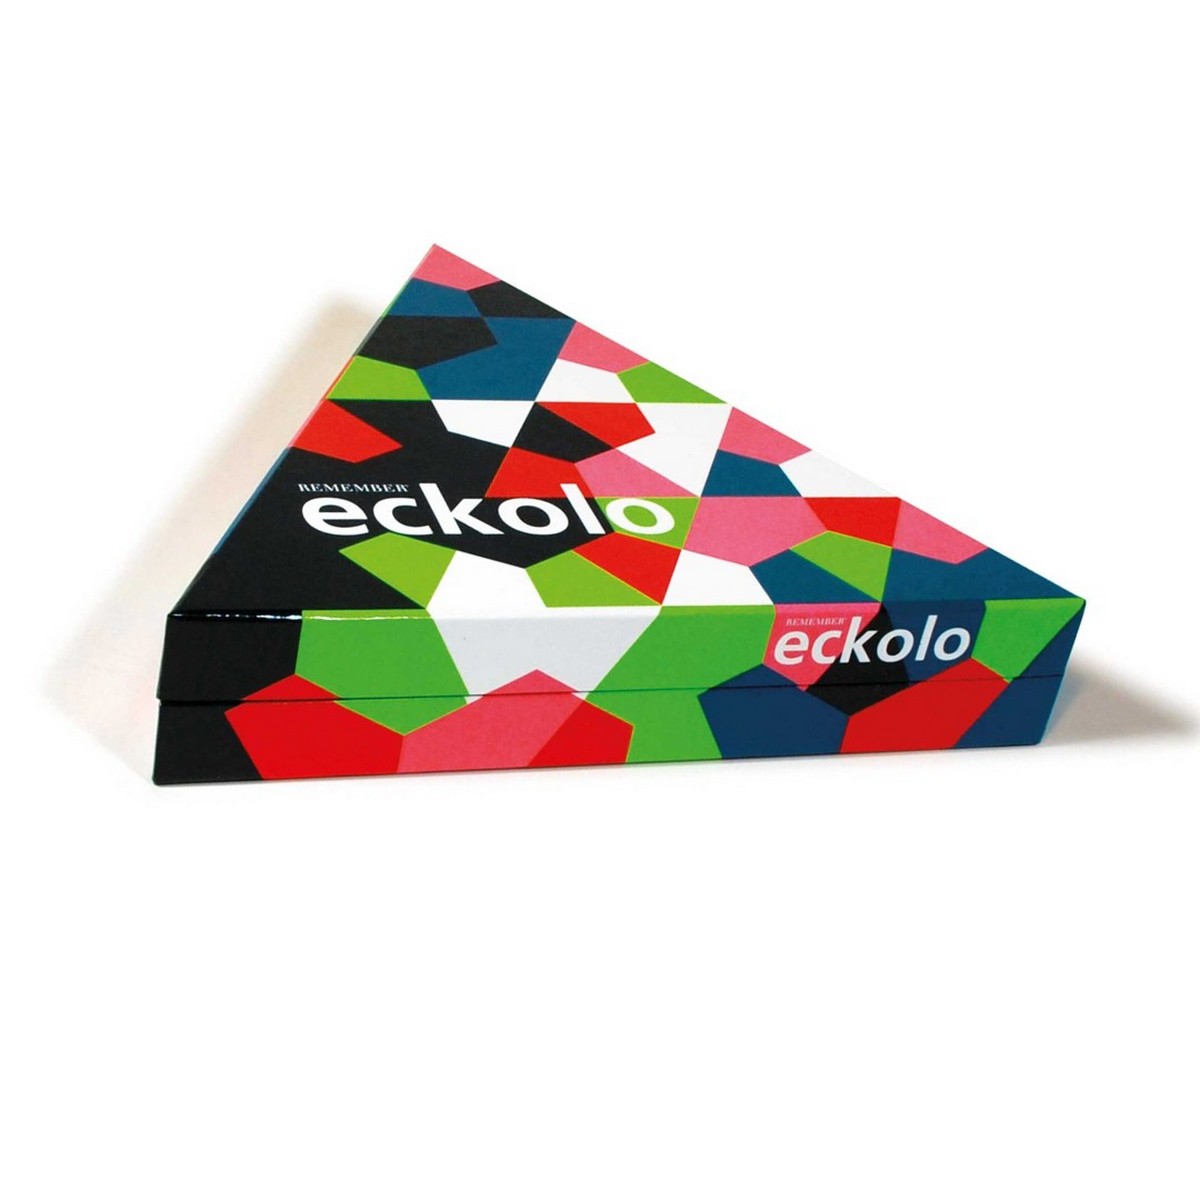 remember jeu eckolo un jeu pour ados une idee cadeau chez ugo et lea  (5)